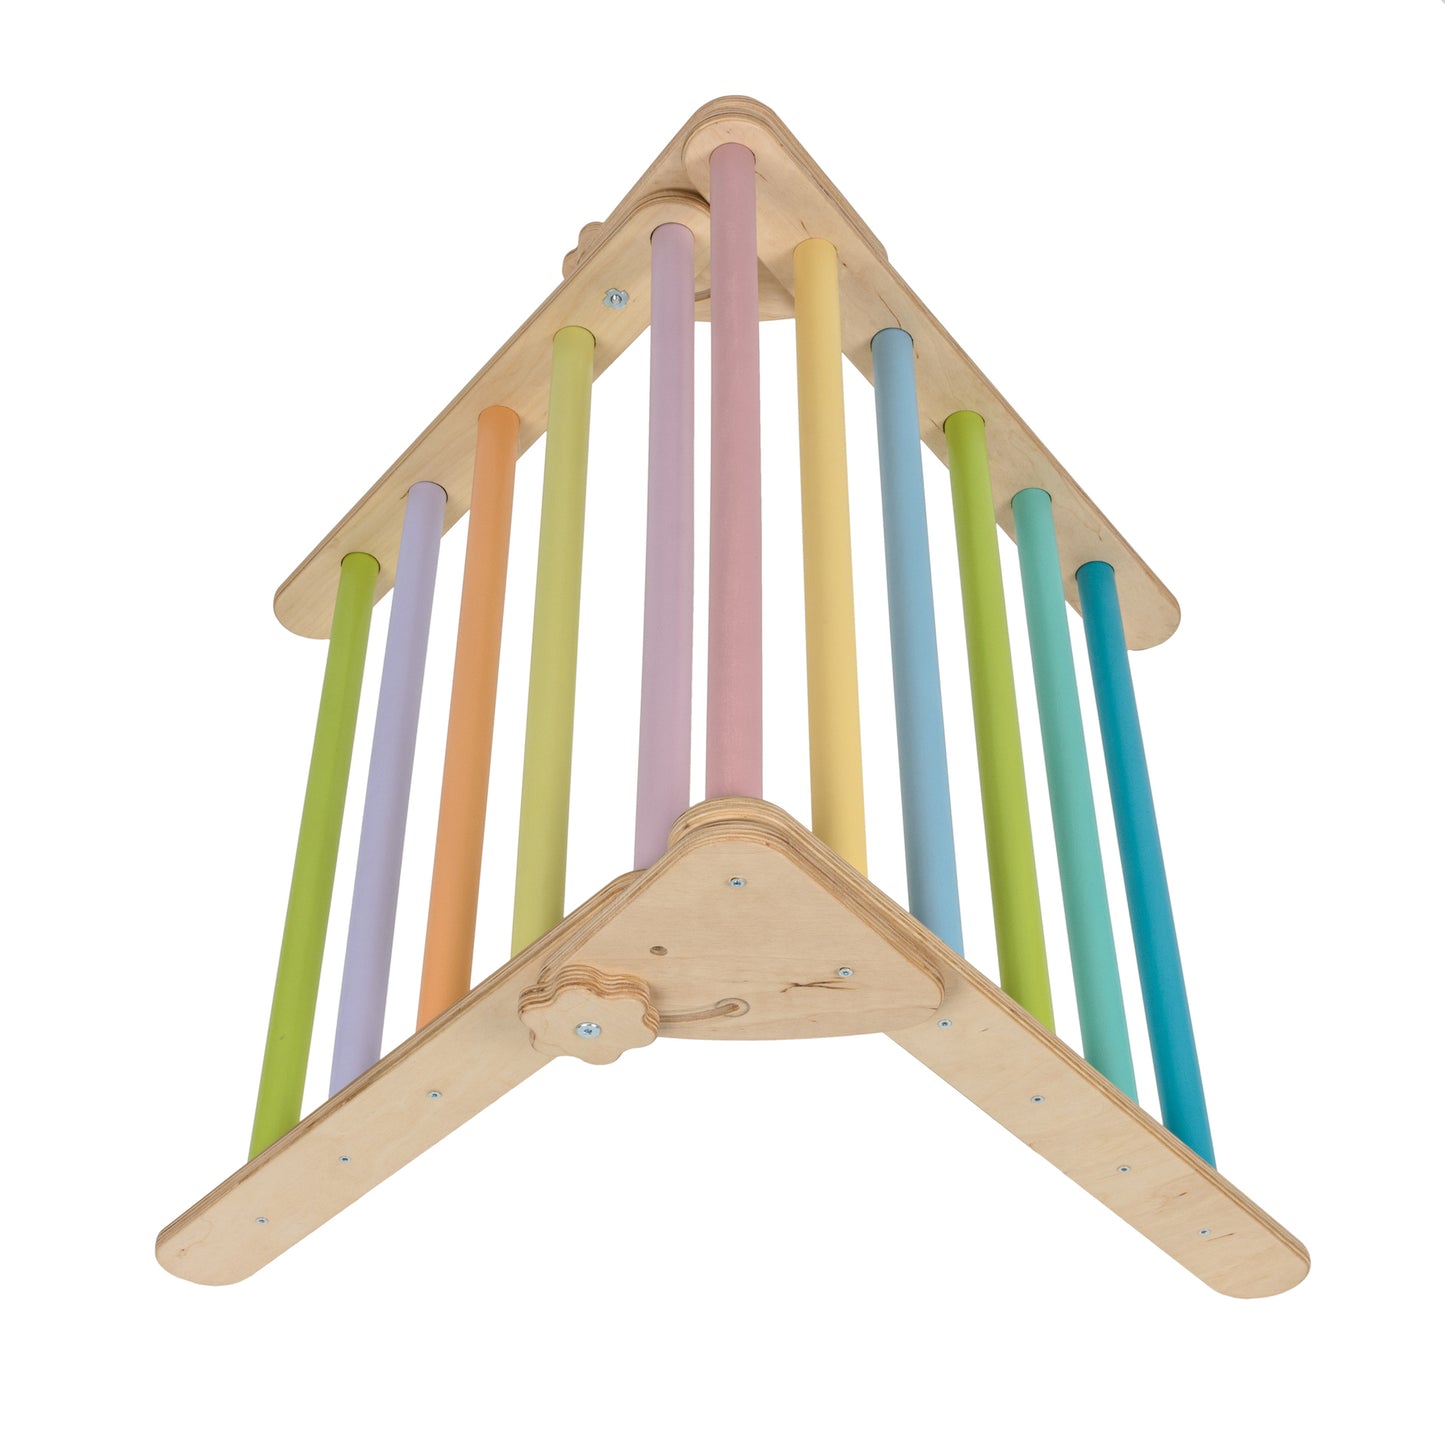 Háromszög mászóka + rámpa + boltív/hinta szett (kis méretű, pasztell színek)